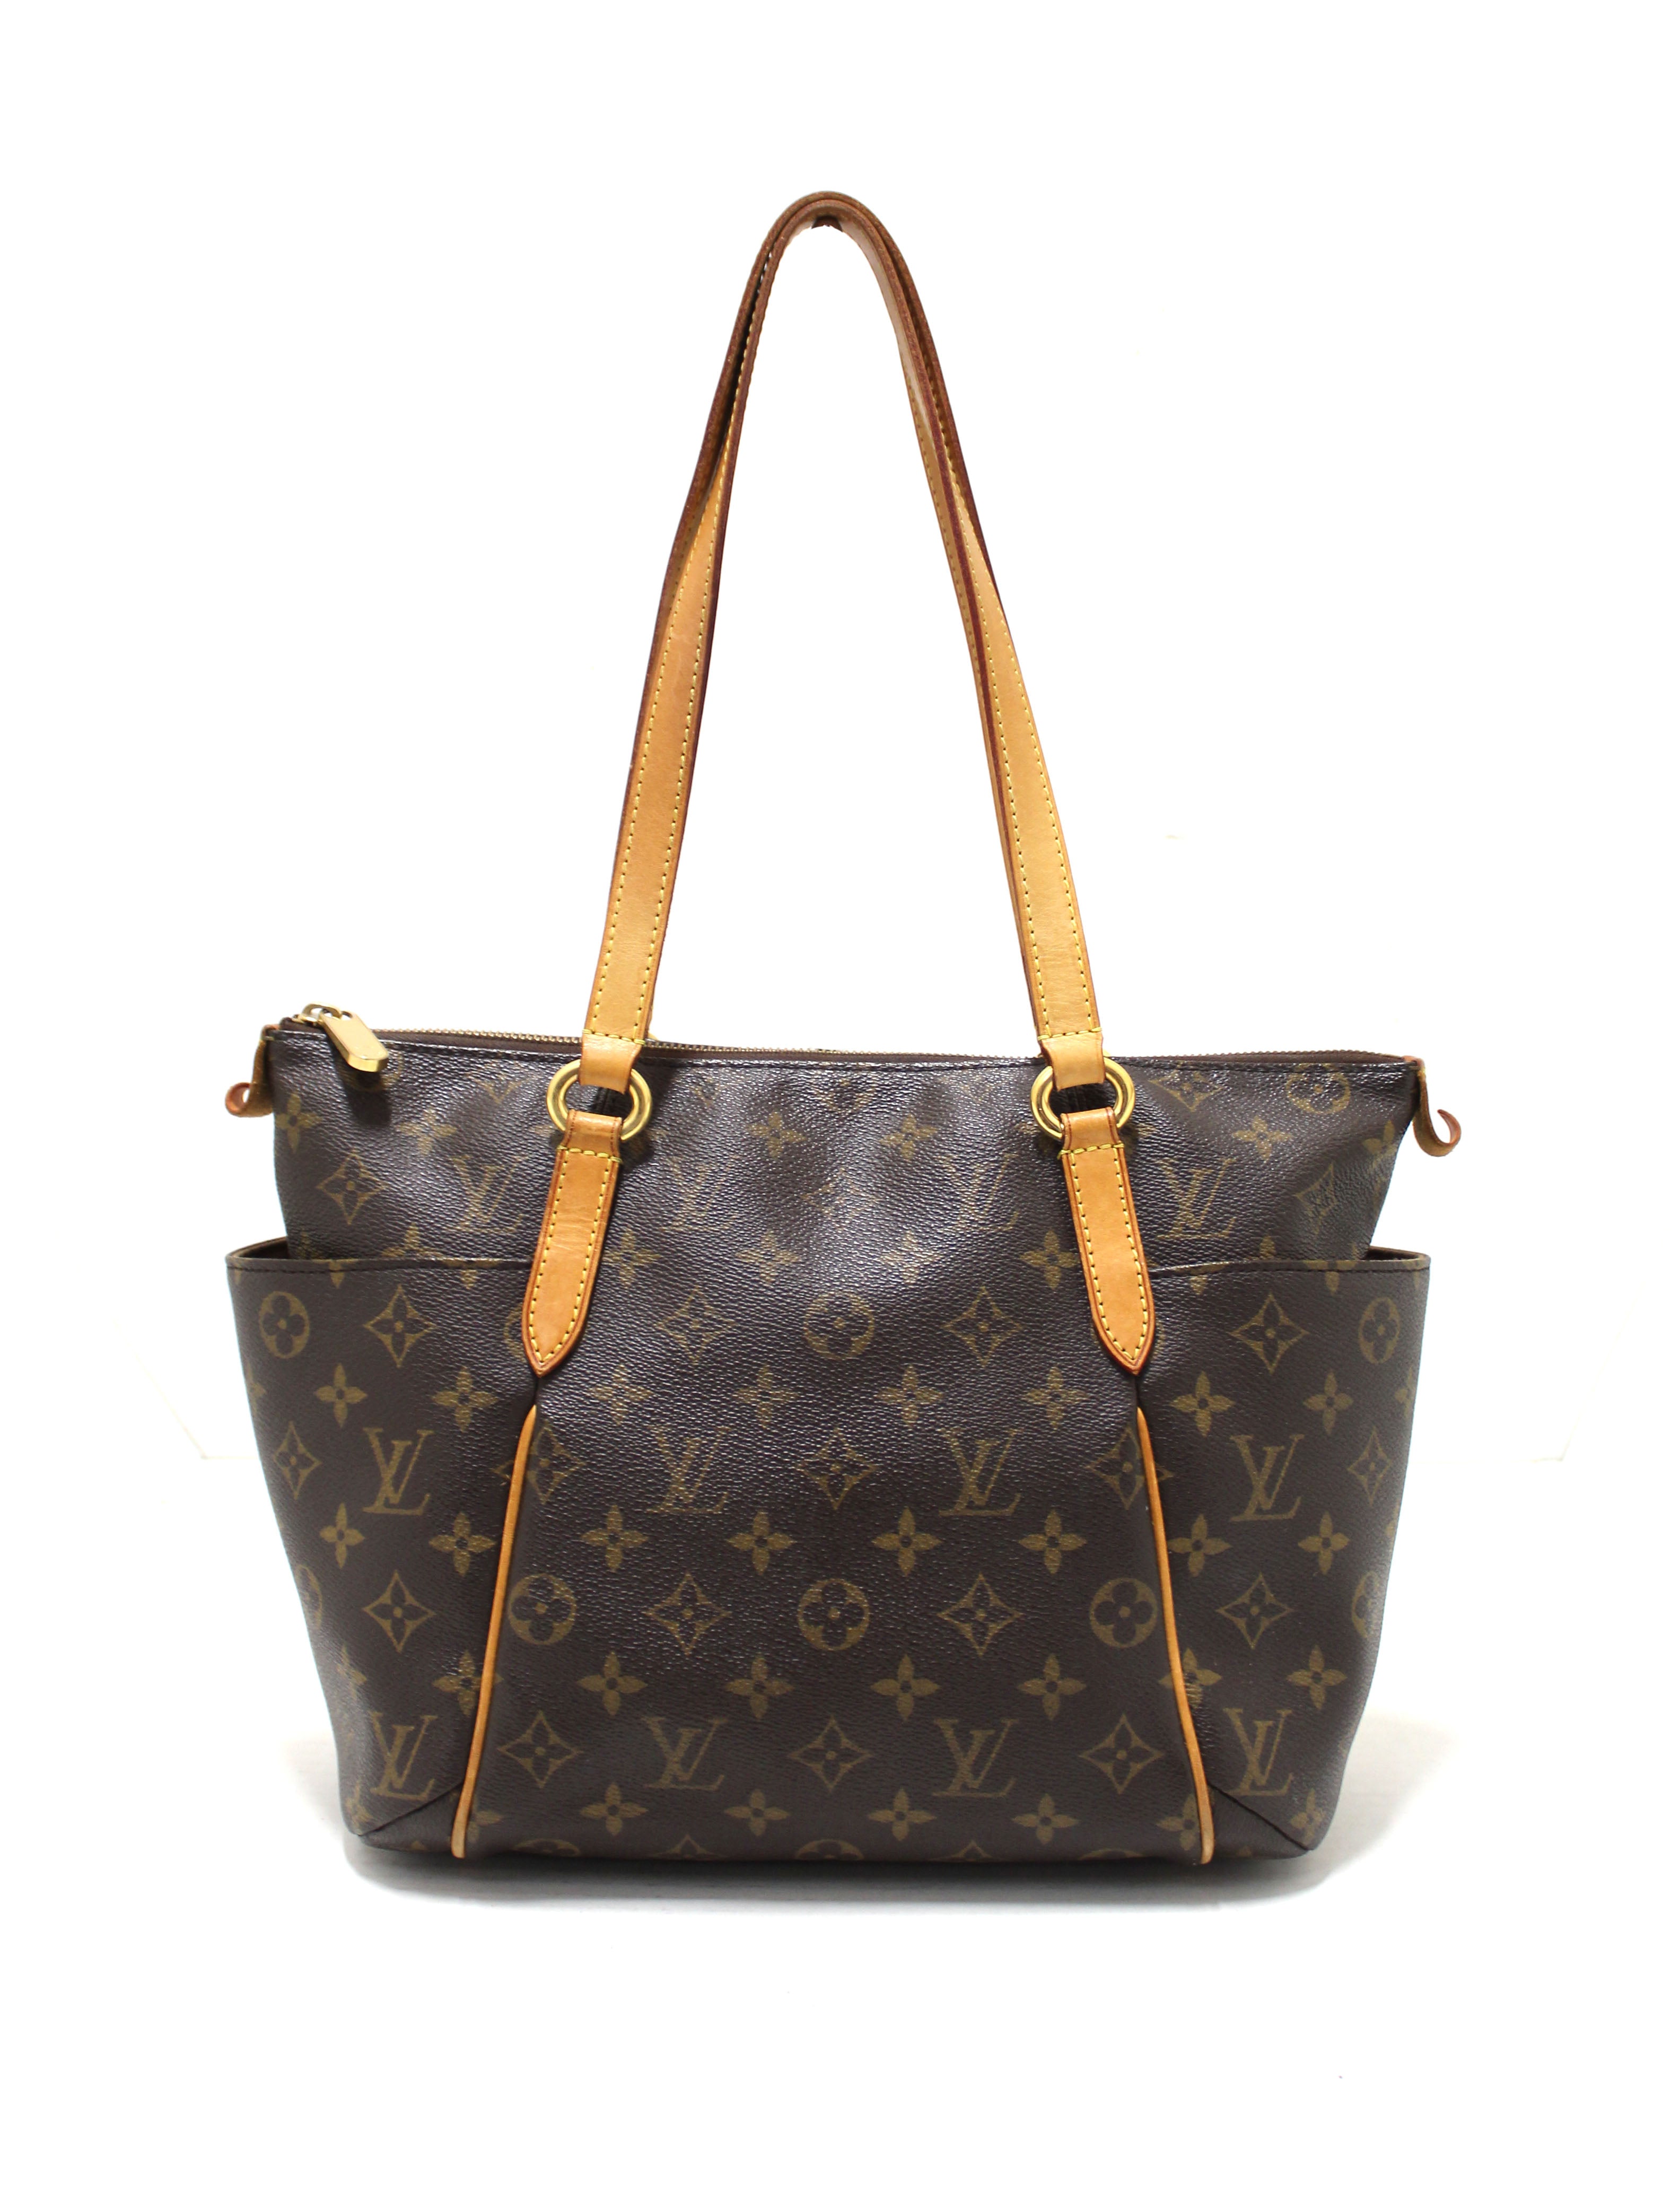 Shop Authentic Louis Vuitton Bags